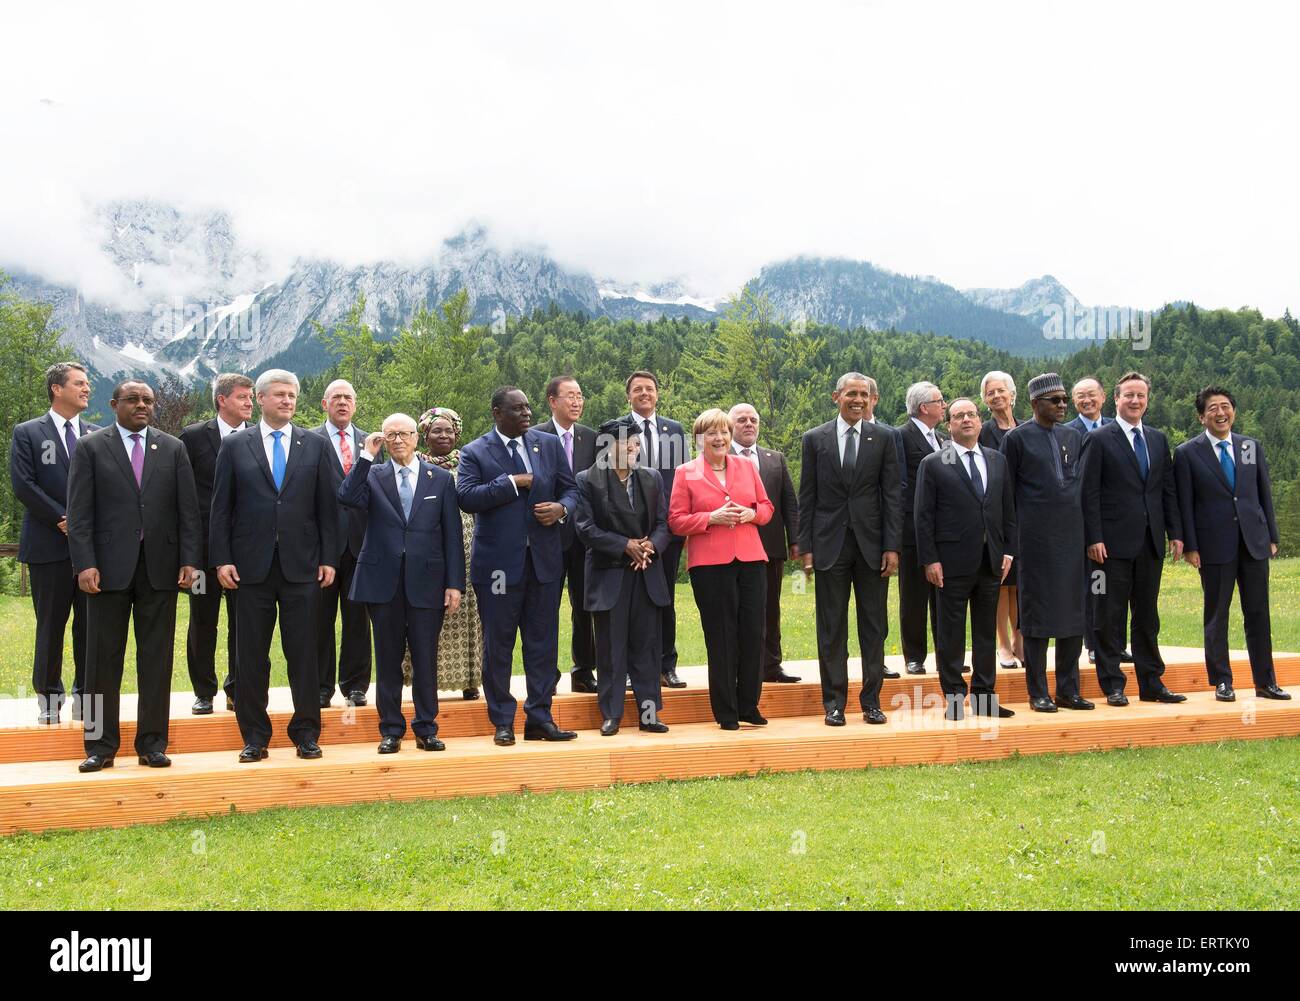 Les dirigeants du monde se tenir ensemble pendant une longue photo de groupe lors de la deuxième journée de la réunion au sommet du G7 au Schloss Elmau 8 juin 2015 près de Garmisch-Partenkirchen, Allemagne. Banque D'Images